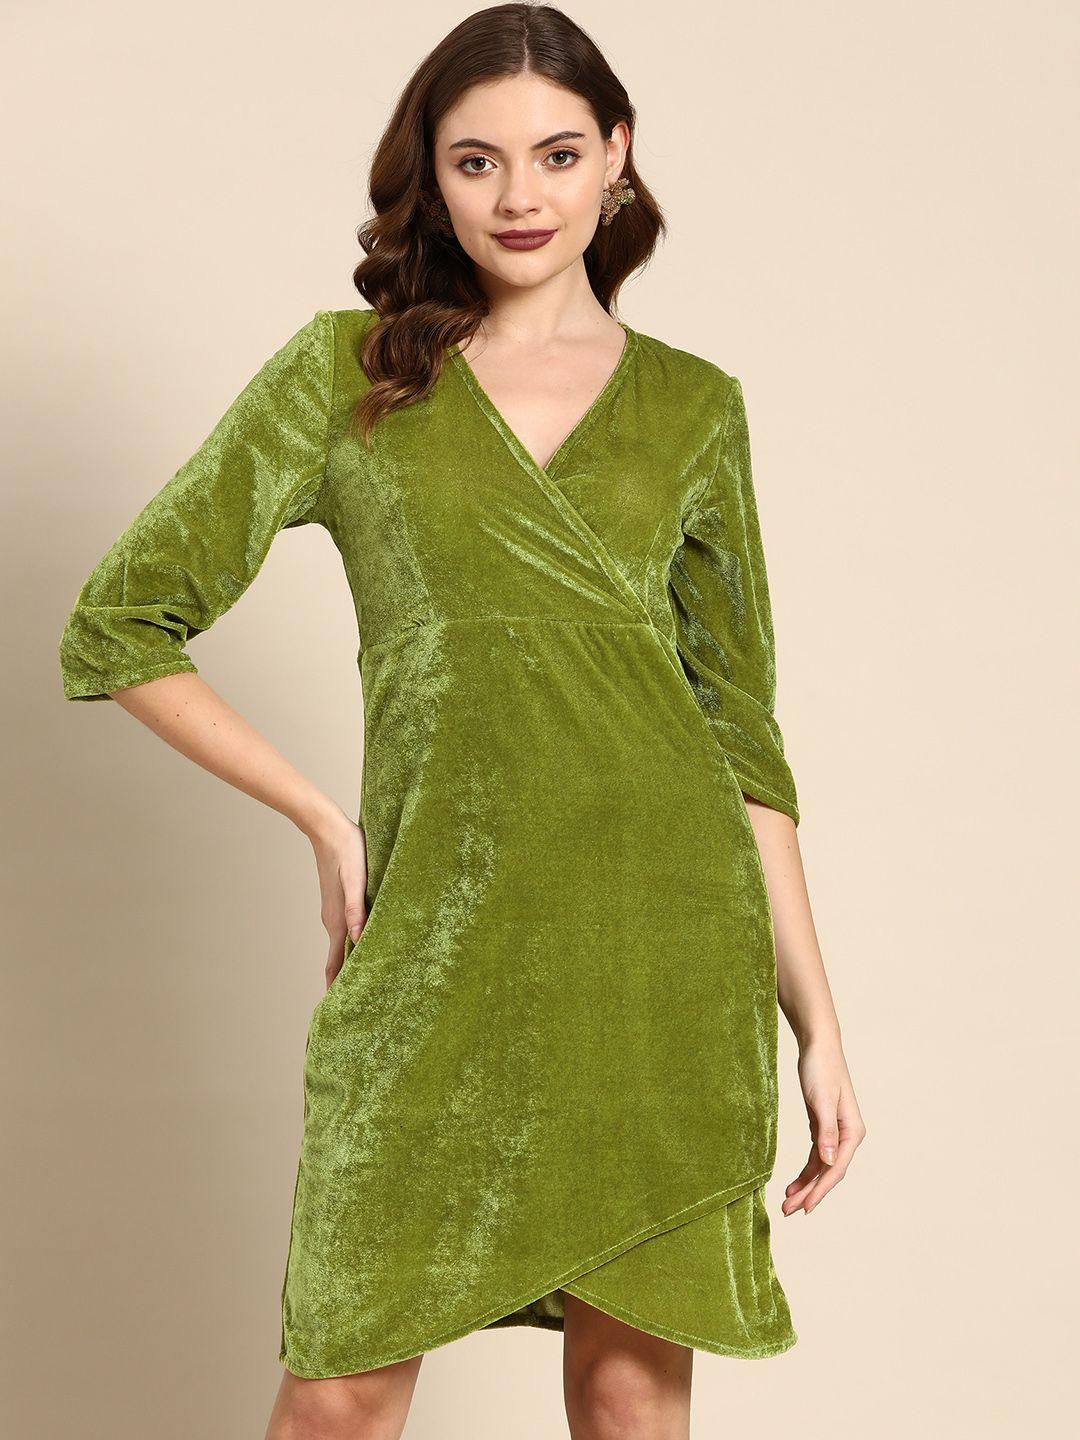 dodo-&-moa-green-sheath-dress